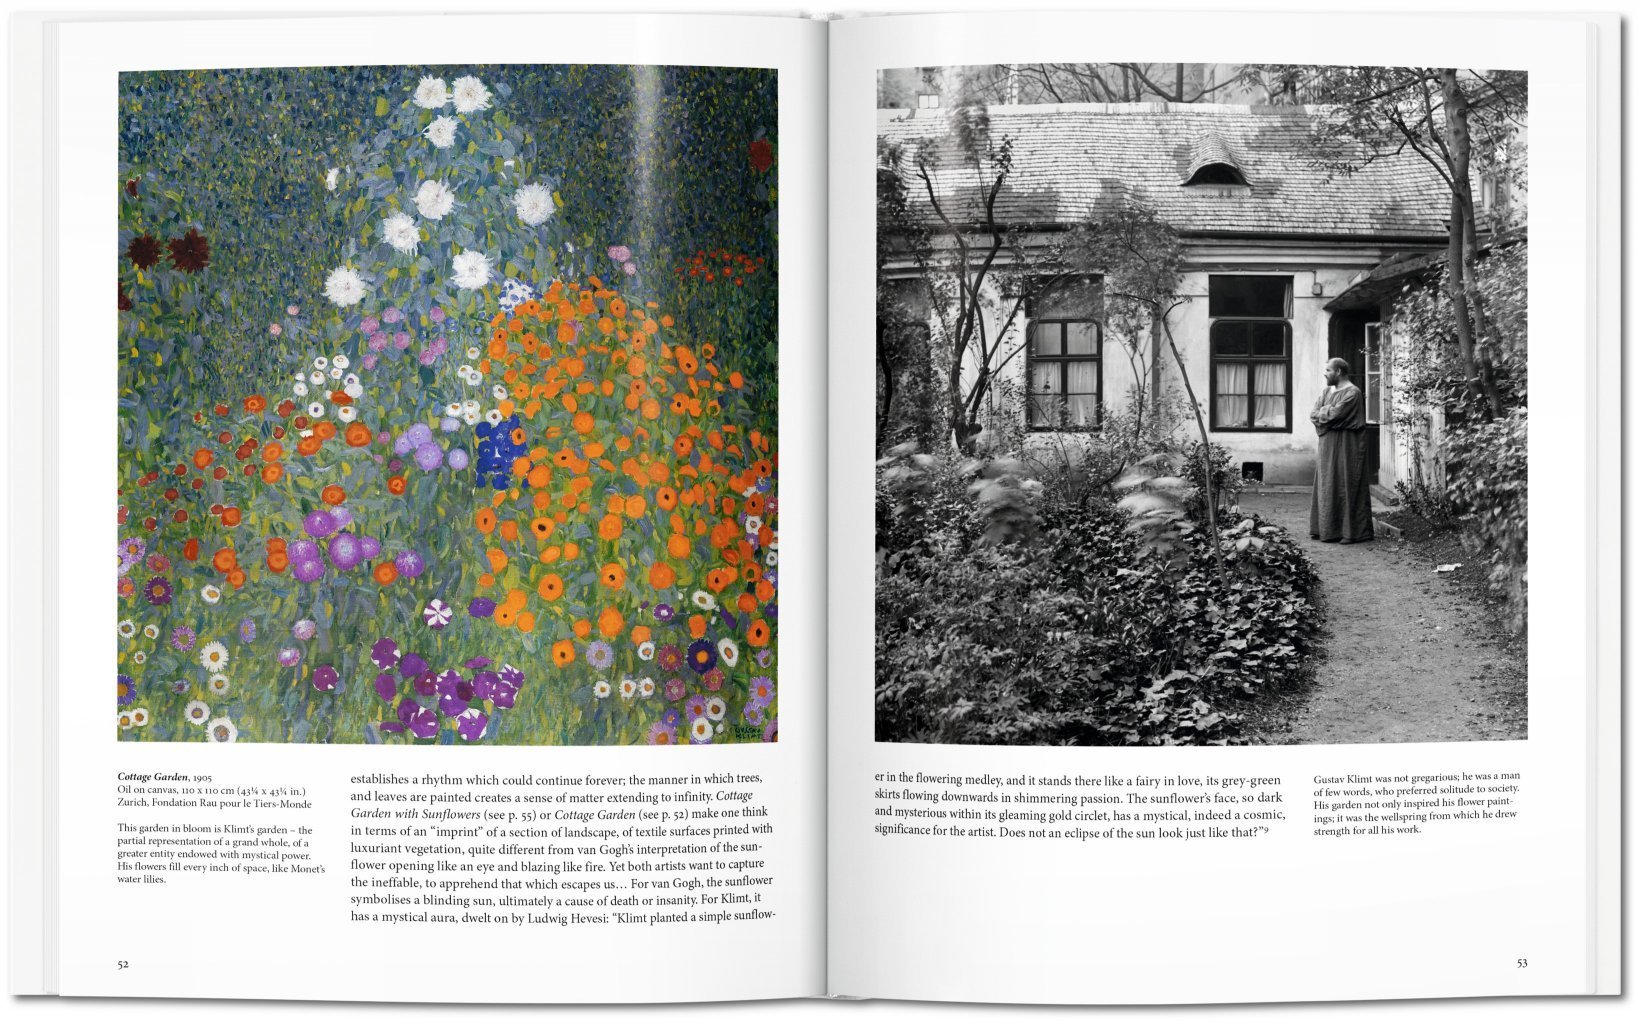 Gustav Klimt | Die Welt in weiblicher Form